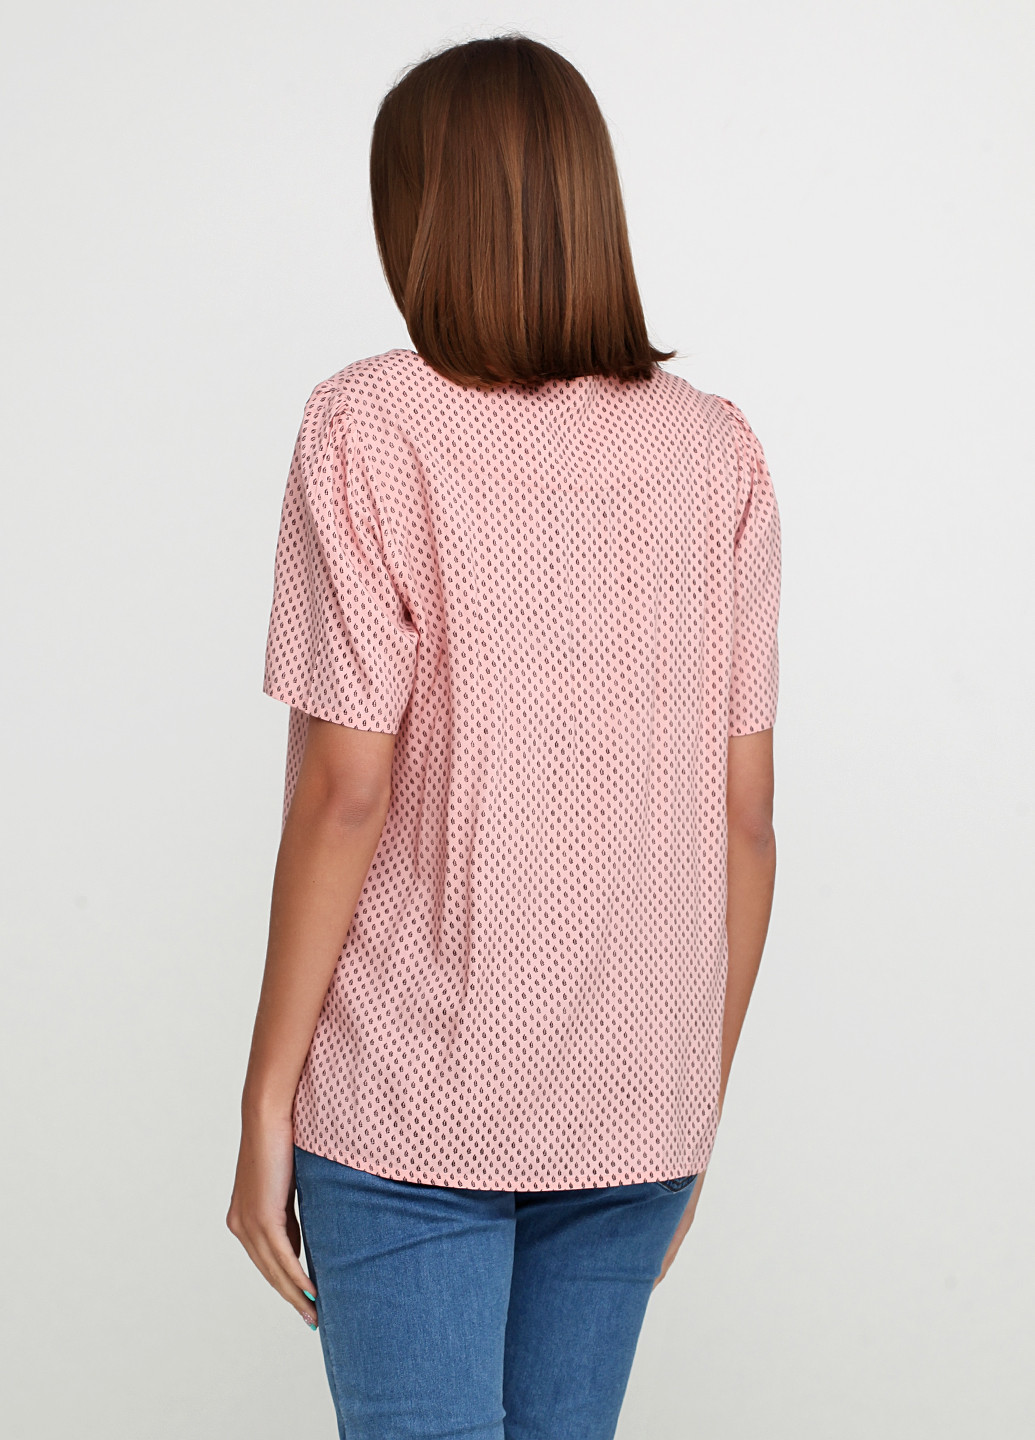 Розовая летняя блуза Intown